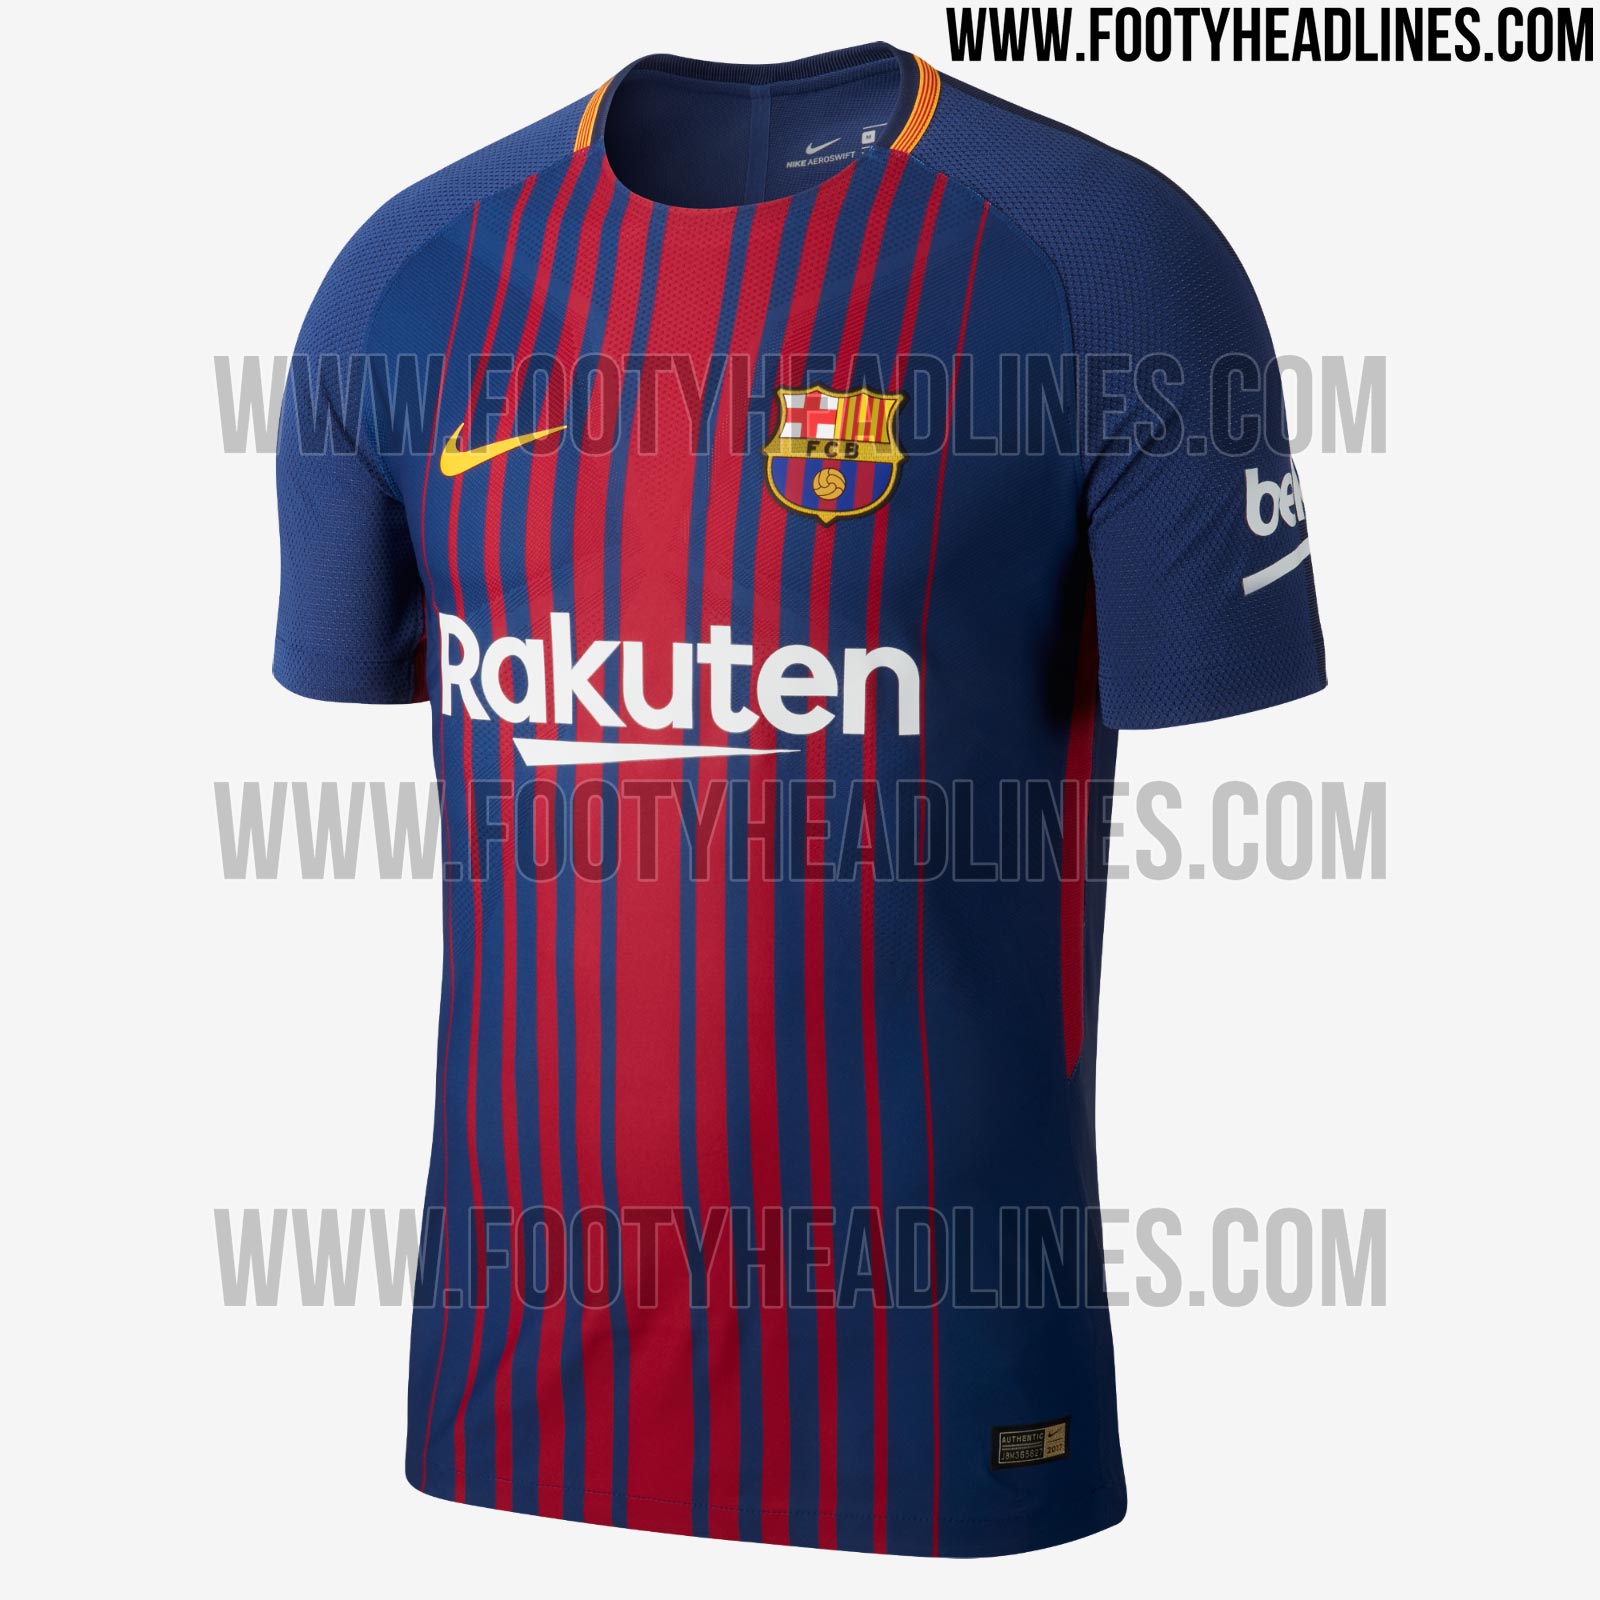 barcelona-17-18-home-kit-1.jpg